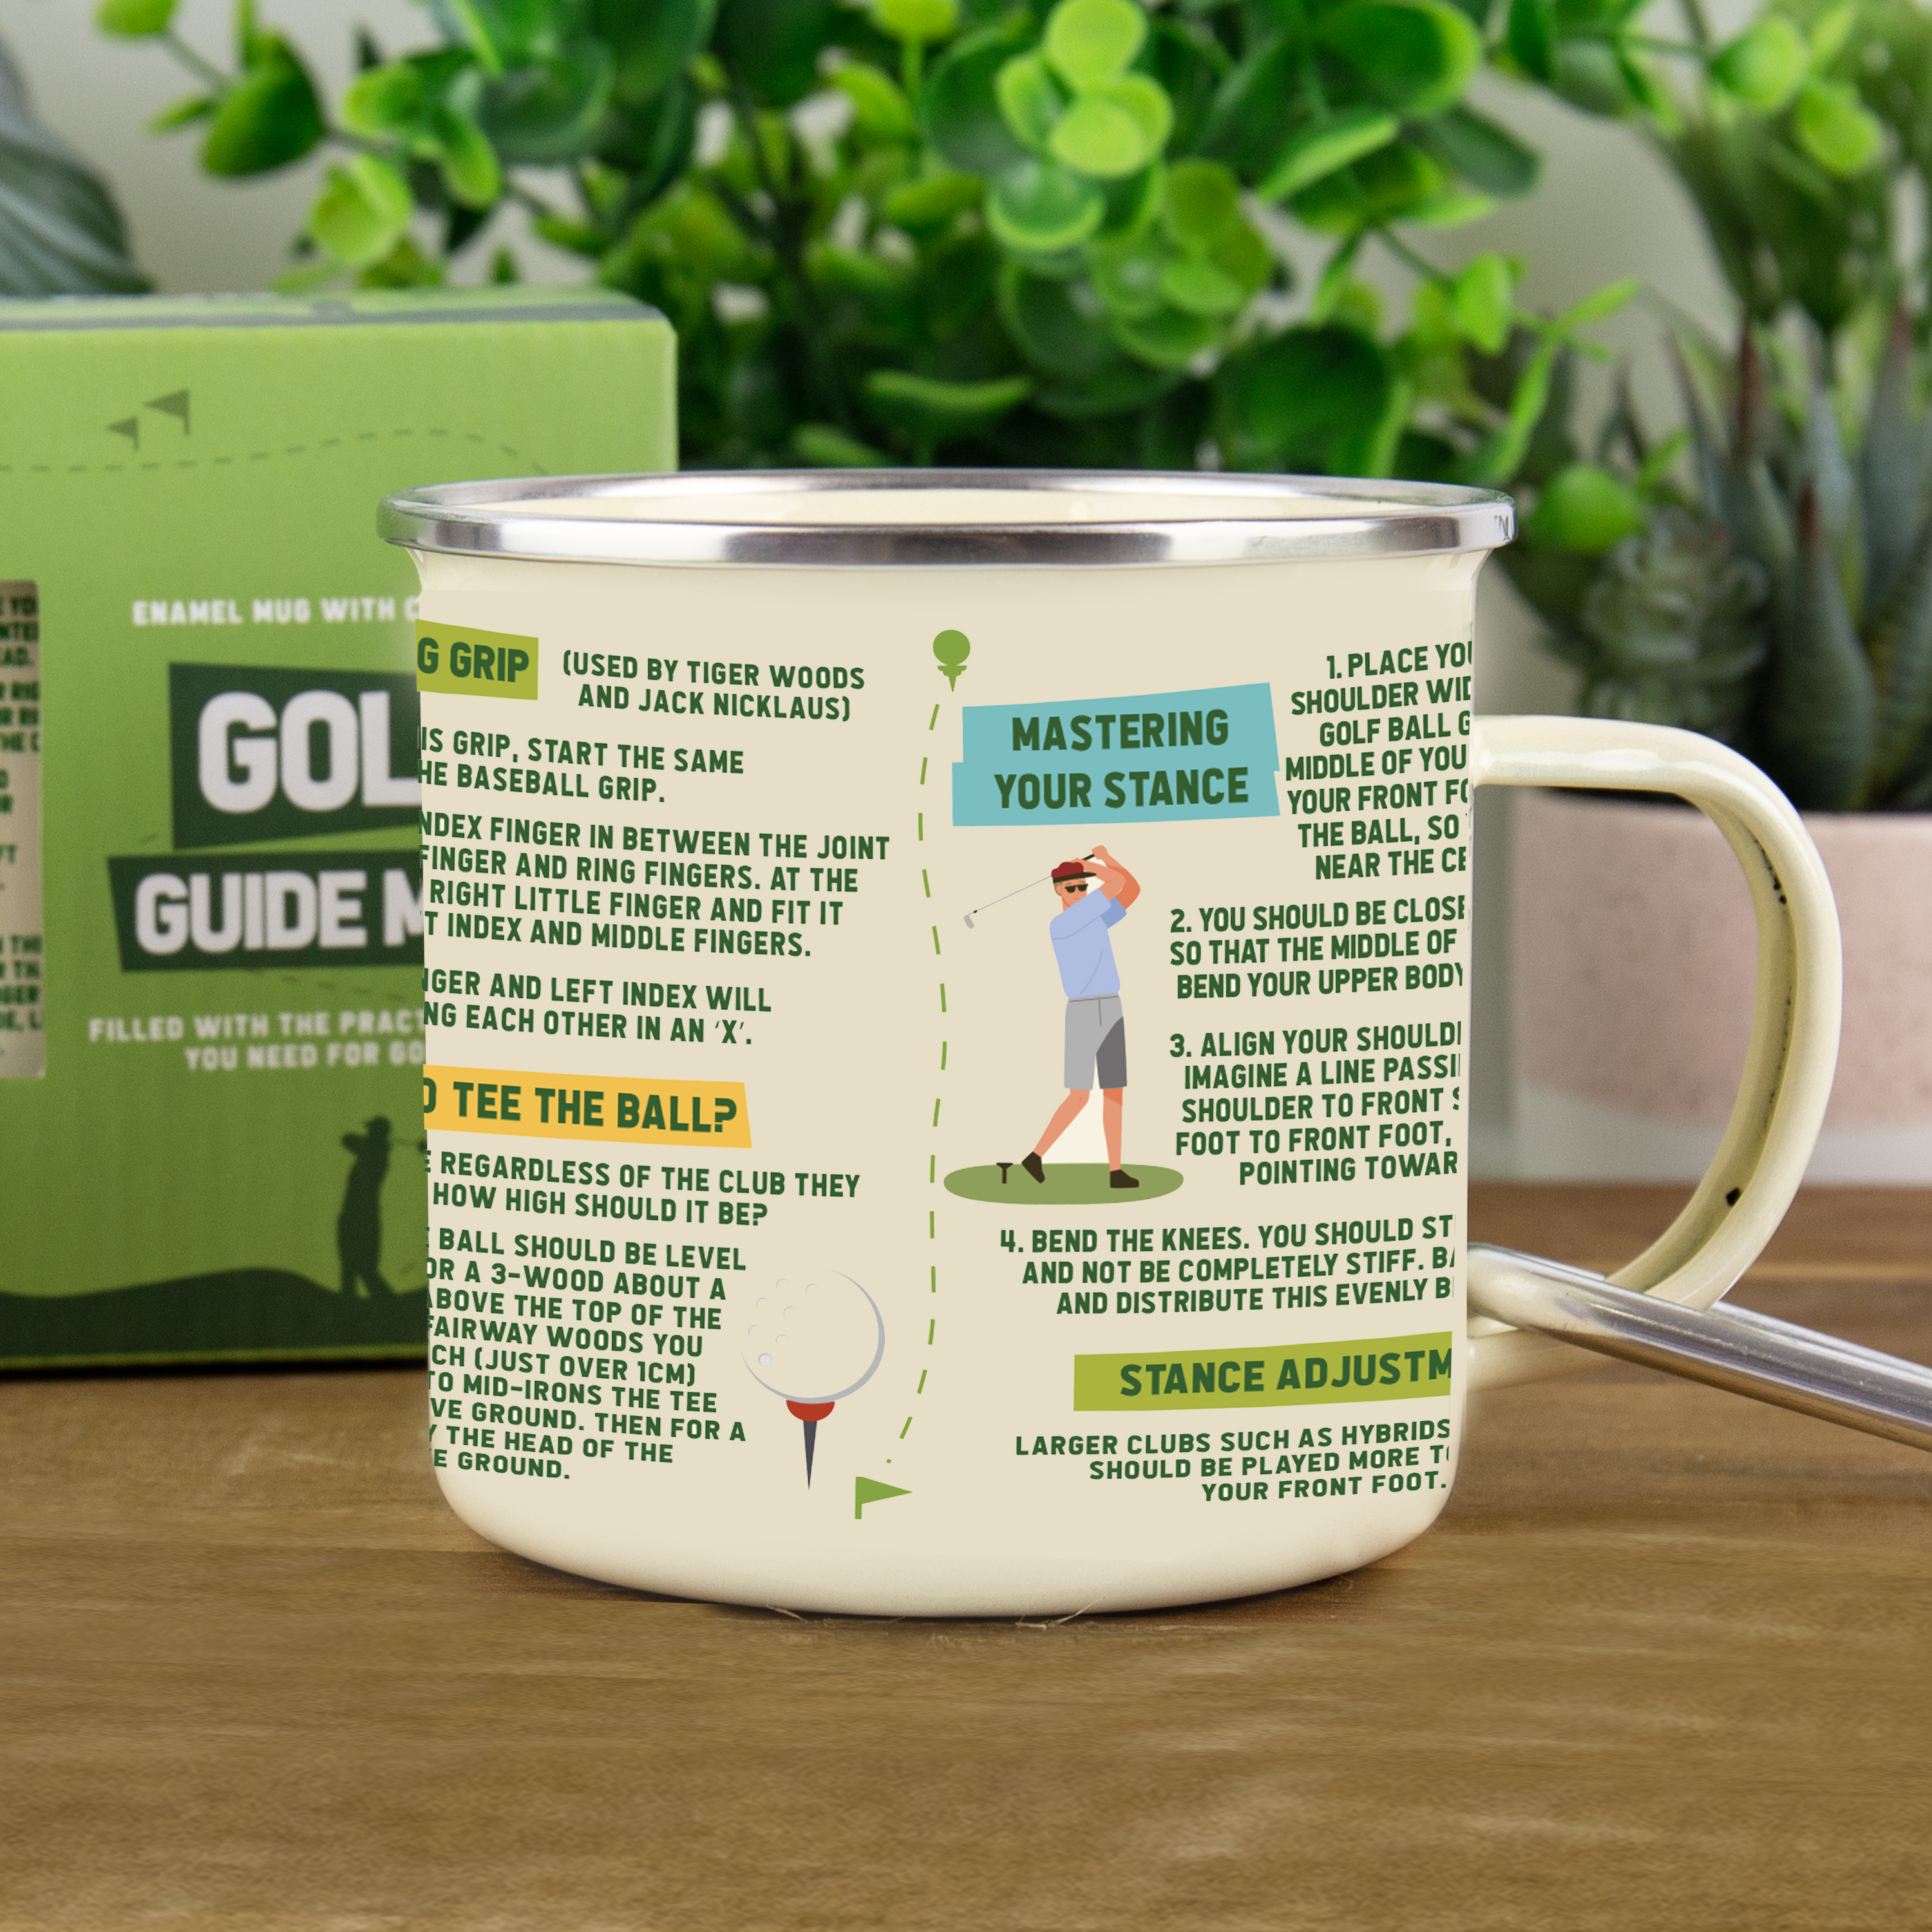 Emaljmugg Golf Guide